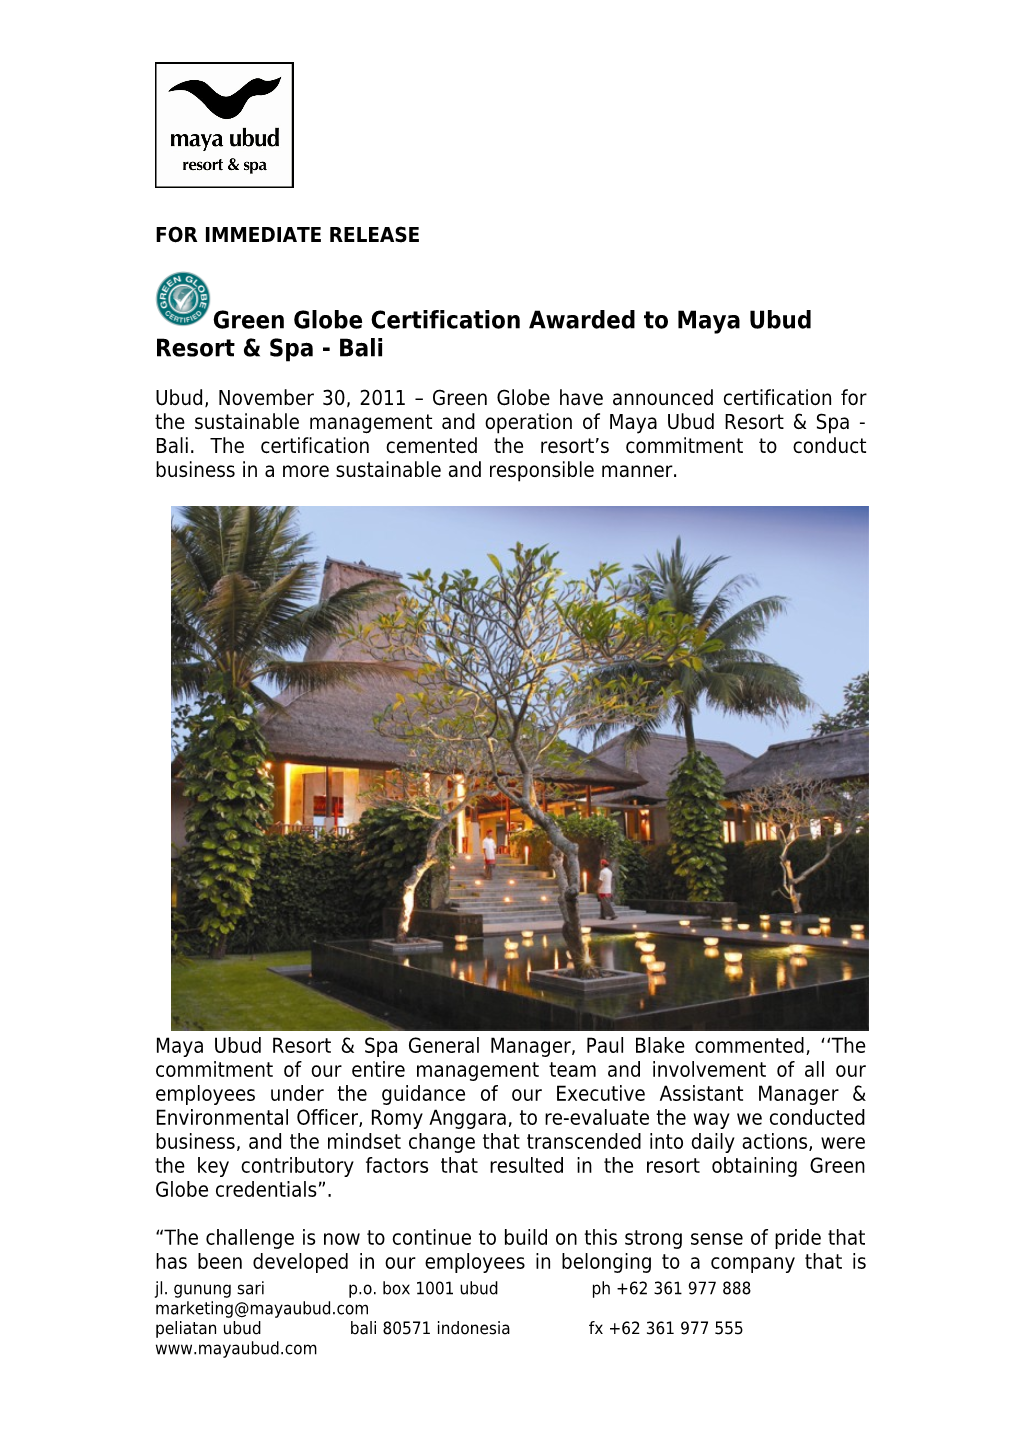 HUT Ke-10 Maya Ubud Resort & Spa Mengusung Konsep Tri Hita Karana